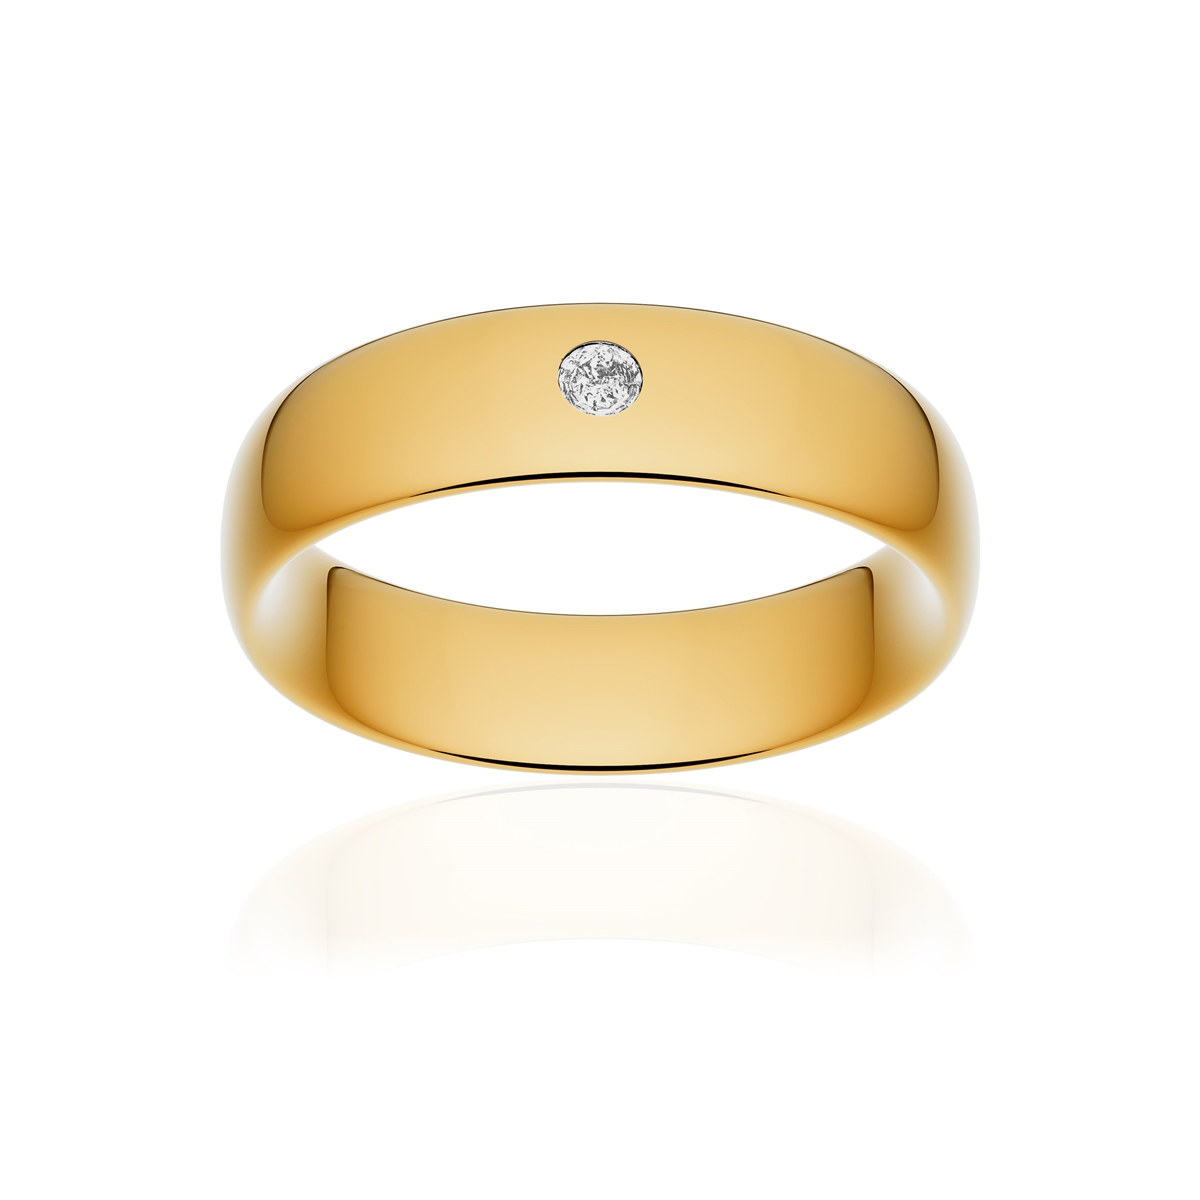 Alliance or 750 jaune poli ruban confort 6mm diamant brillant